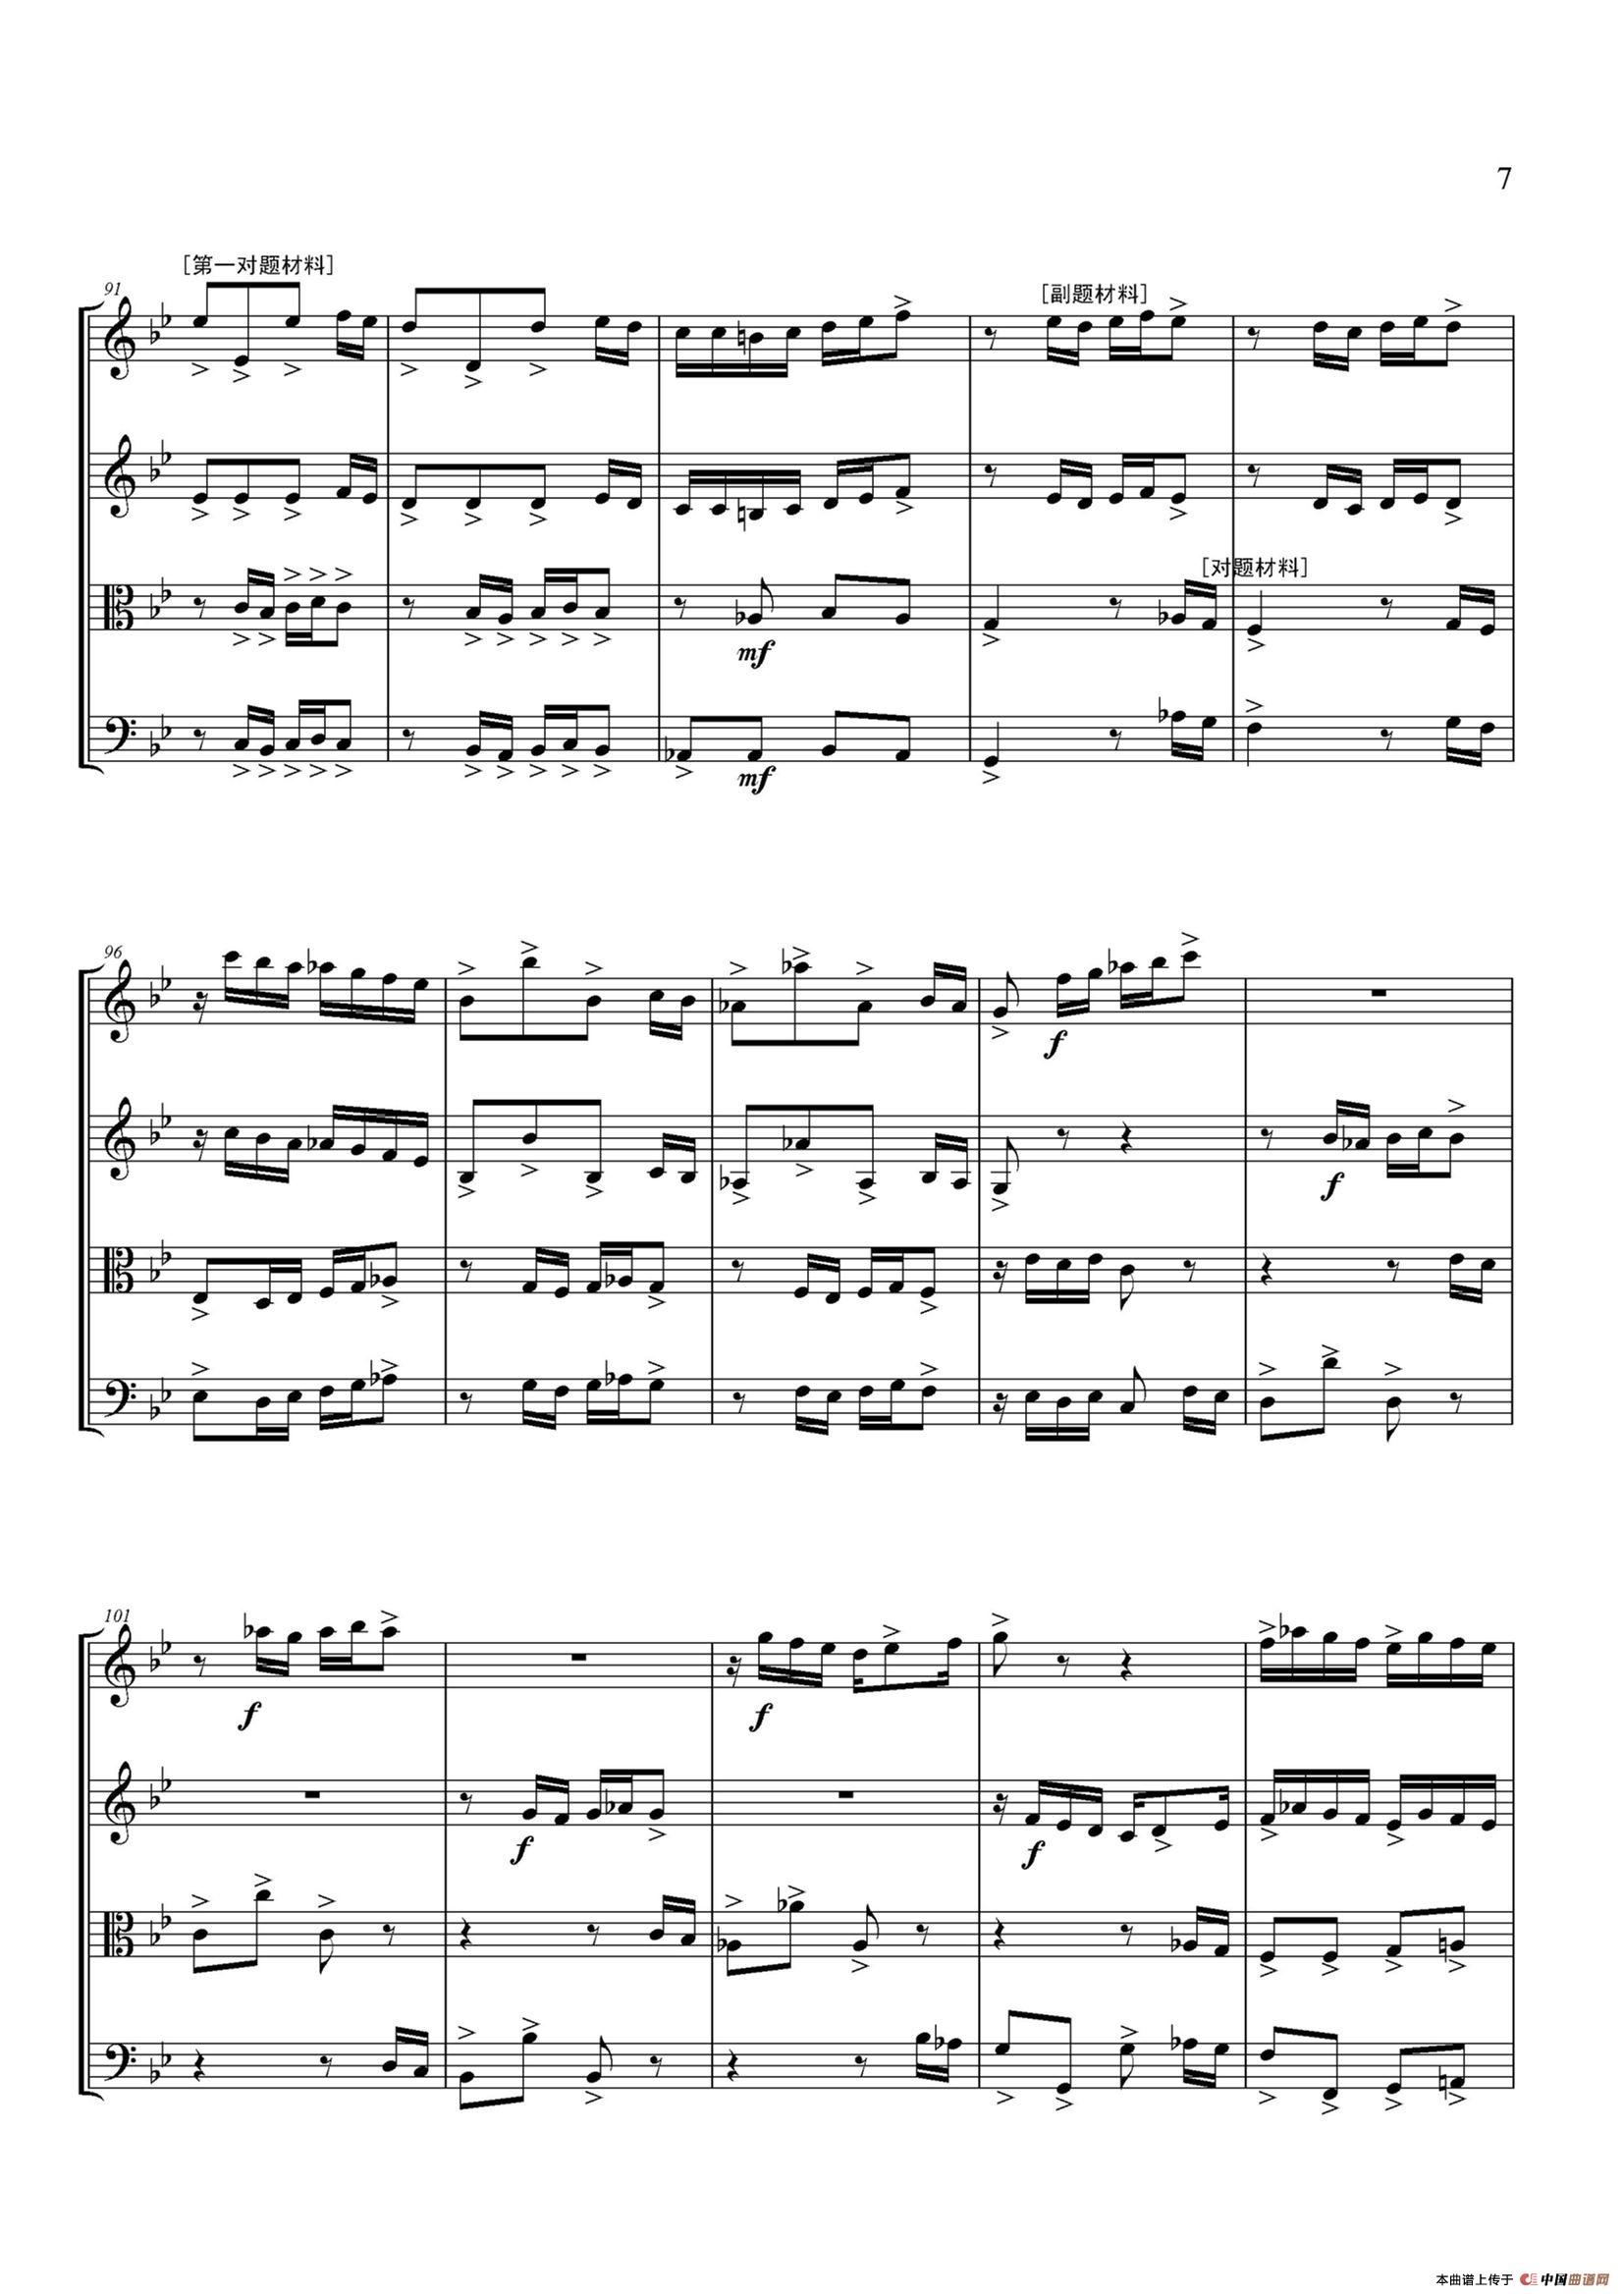 弦乐大赋格·丝绸之路上的哲学沉思（四重奏）小提琴谱